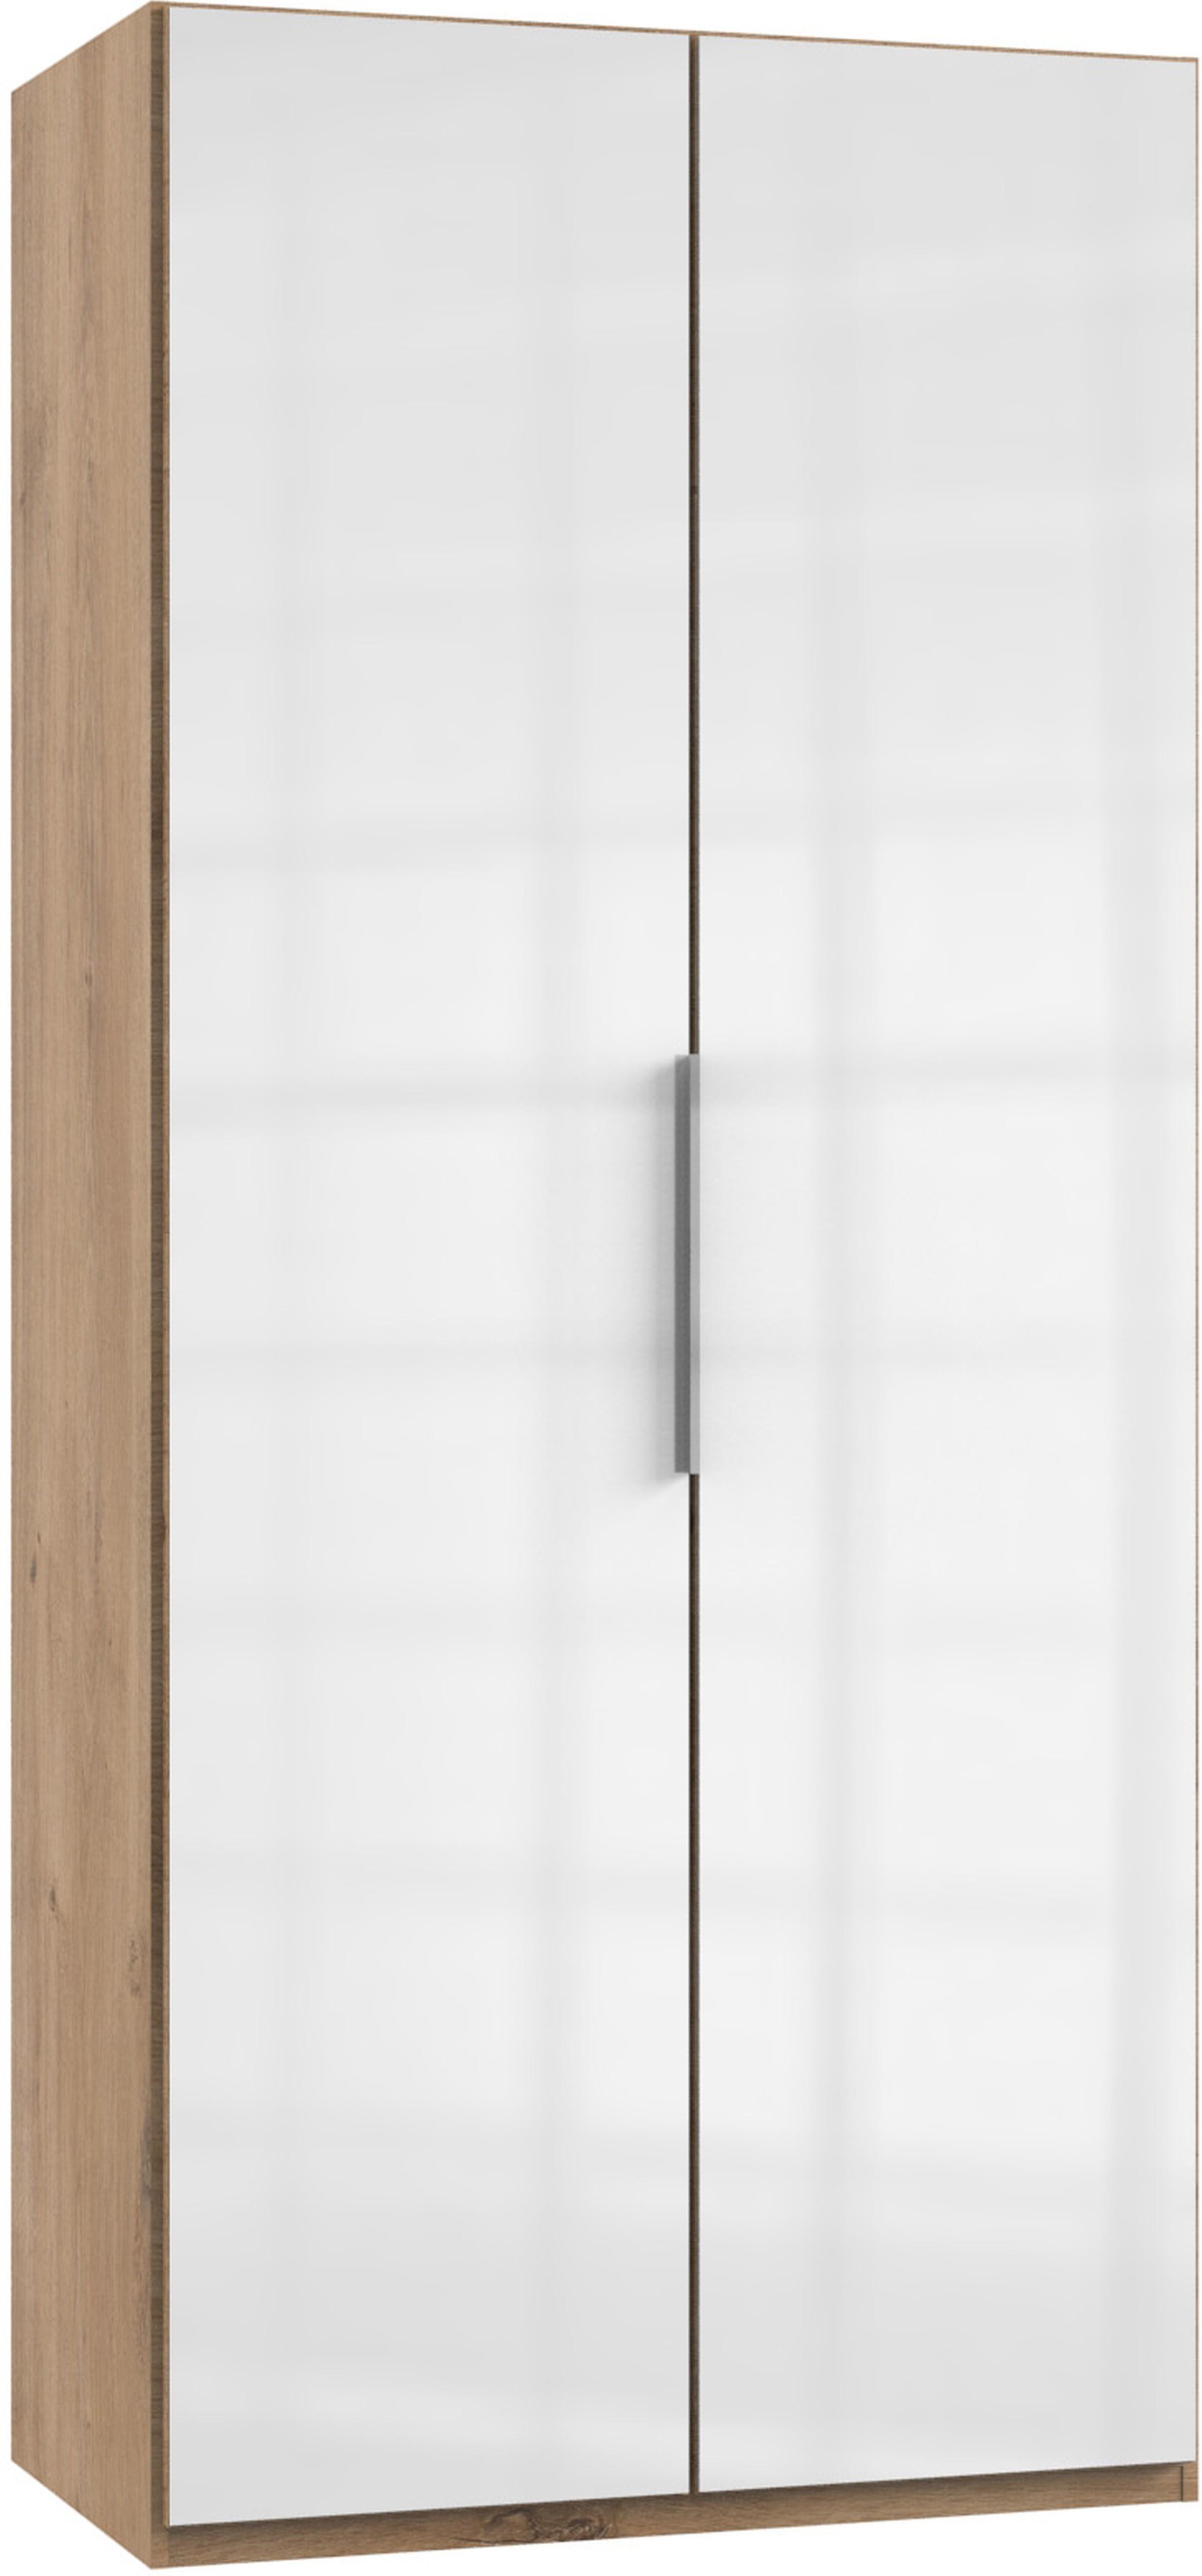 Drehtürenschrank 100cm Level, Weiß/Eiche Dekor - Eichefarben/Weiß, MODERN, Holzwerkstoff (100/216/58cm) - MID.YOU